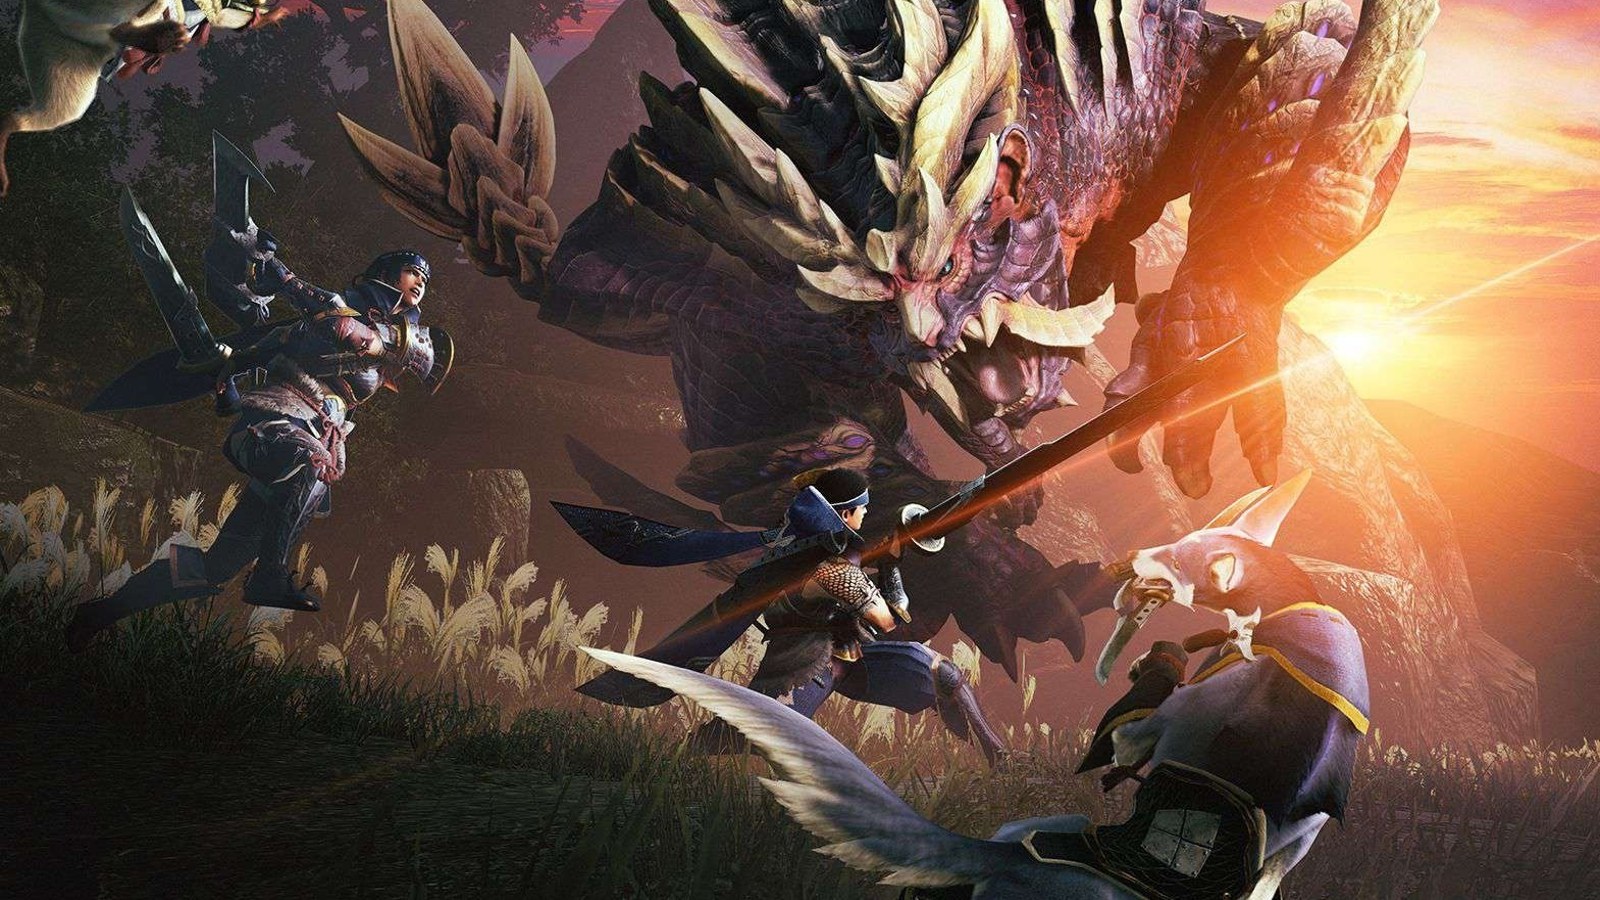 Is Monster Hunter Rise open world?